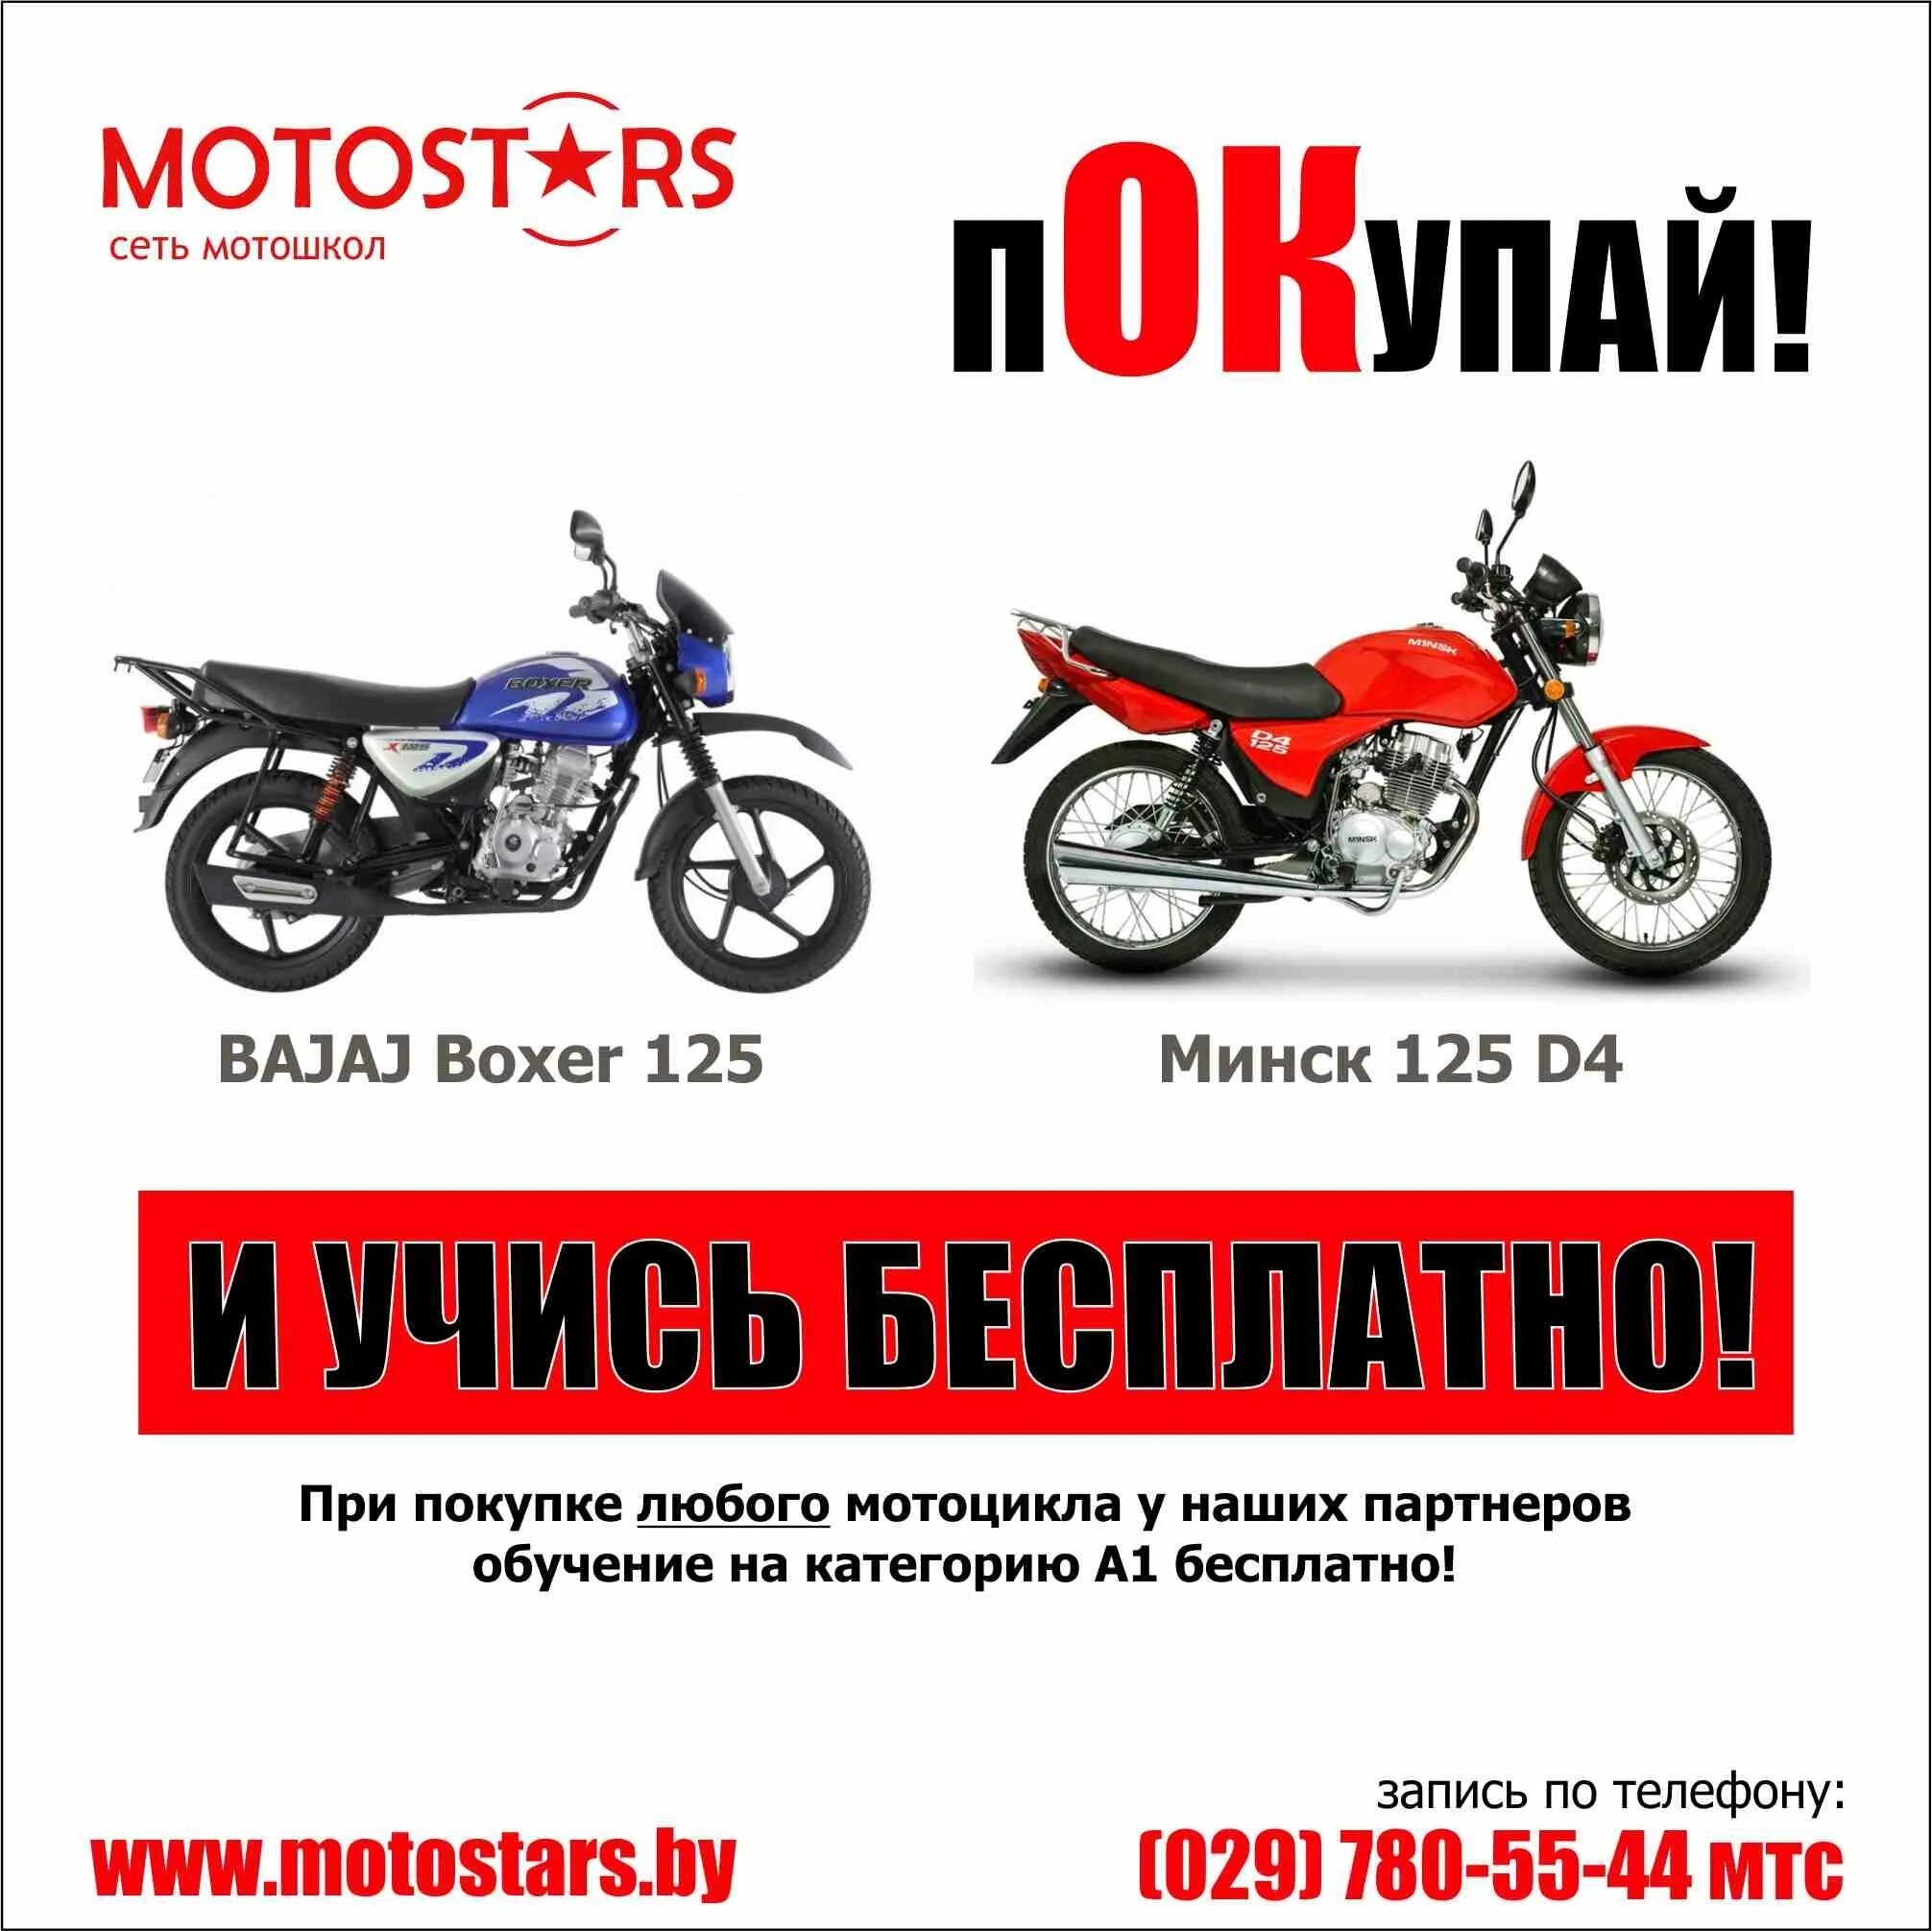 Категория под мотоцикл. Мотоциклы категории а1. Мототехника категории м. Мопеды категории м. Мотоциклы подкатегории а1.